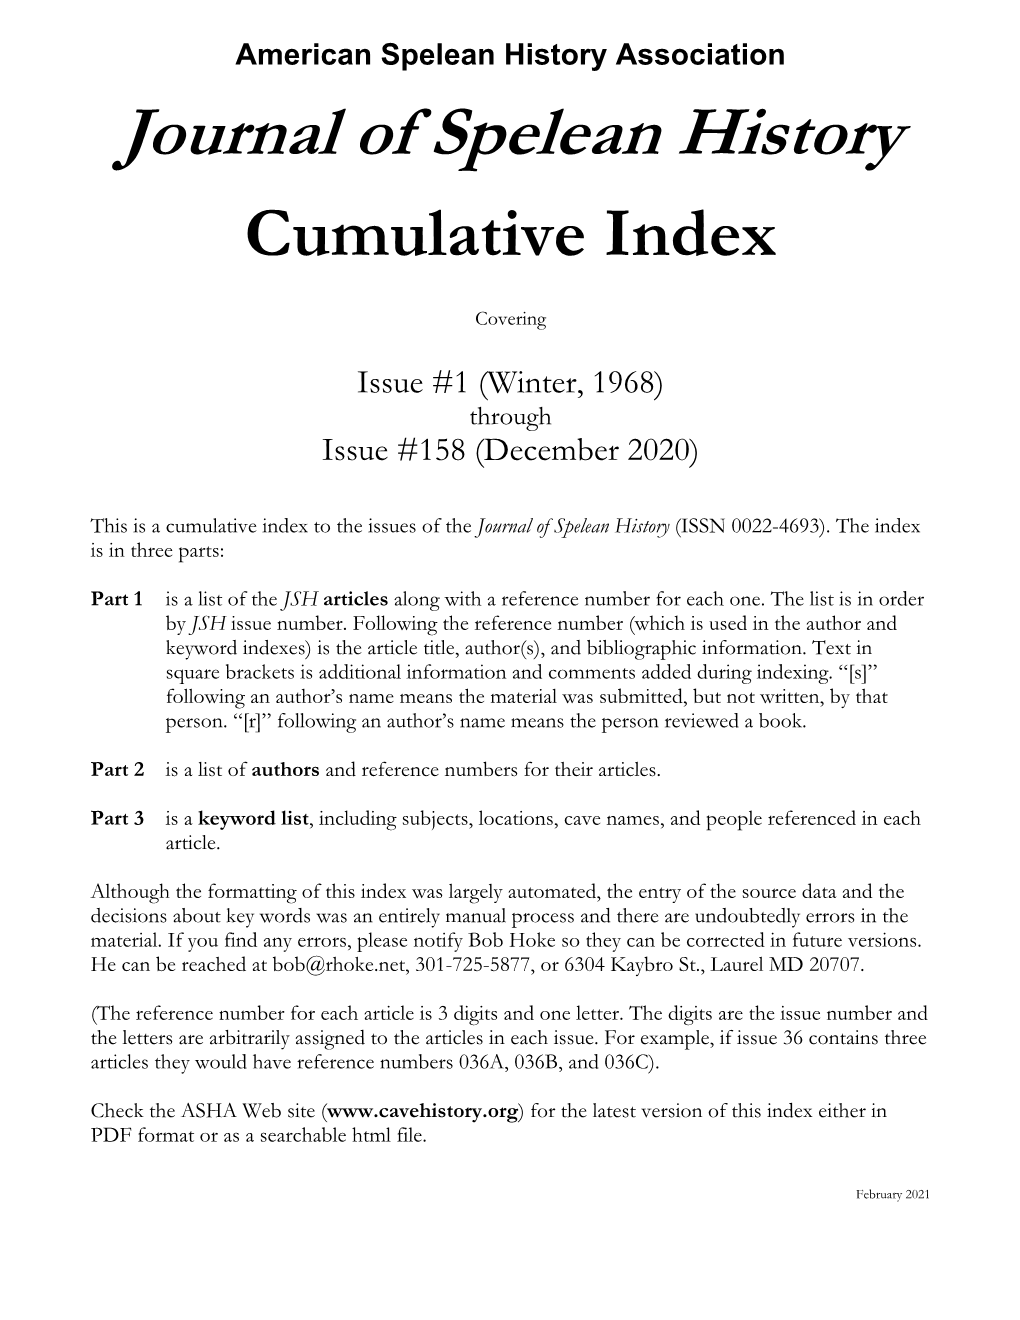 Cumulative Index in PDF Format